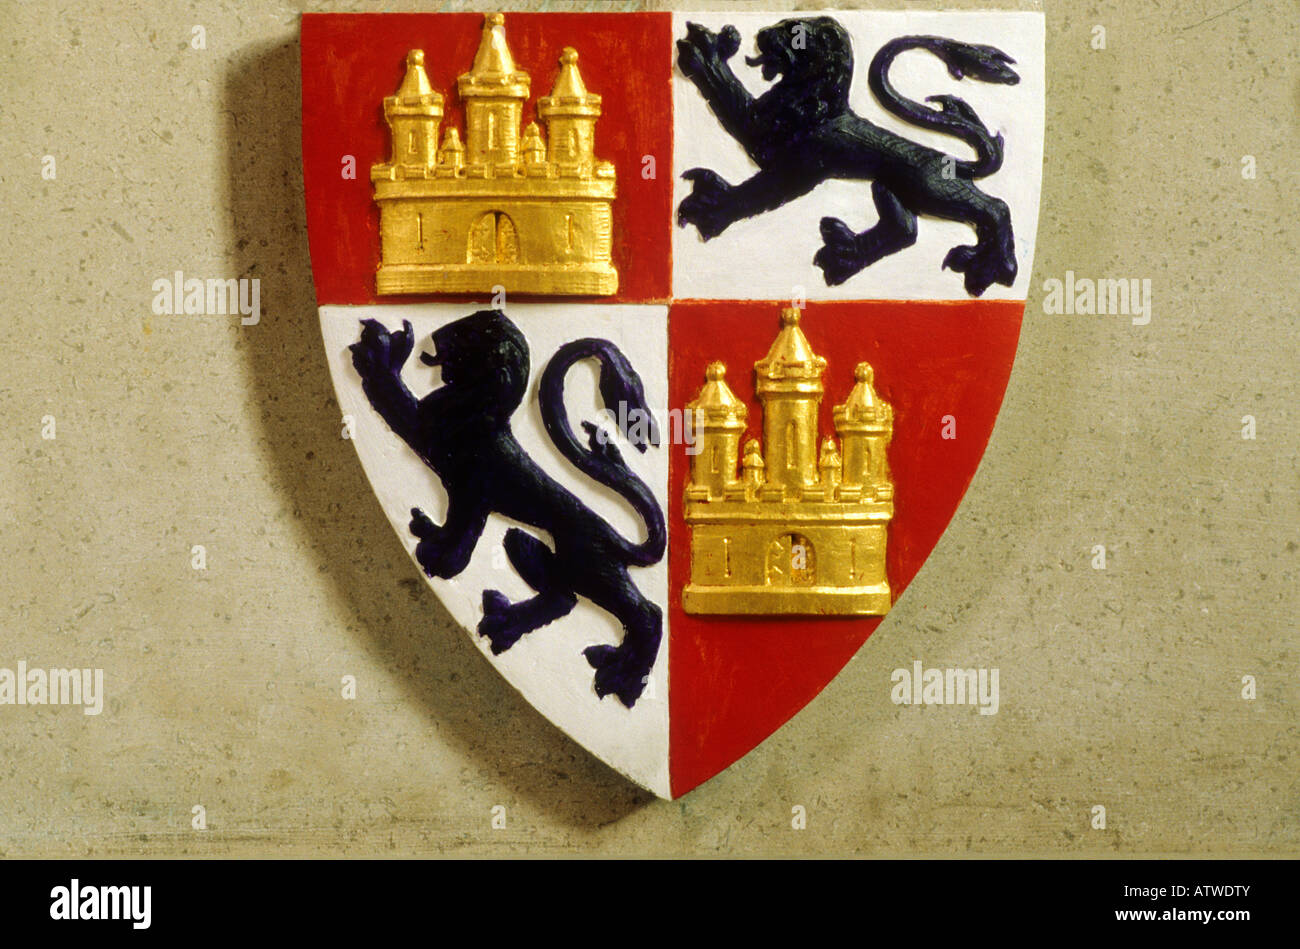 La Cathédrale de Lincoln écu blason héraldique héraldique médiévale périphérique lions noir or doré château médiéval Anglais England UK Banque D'Images